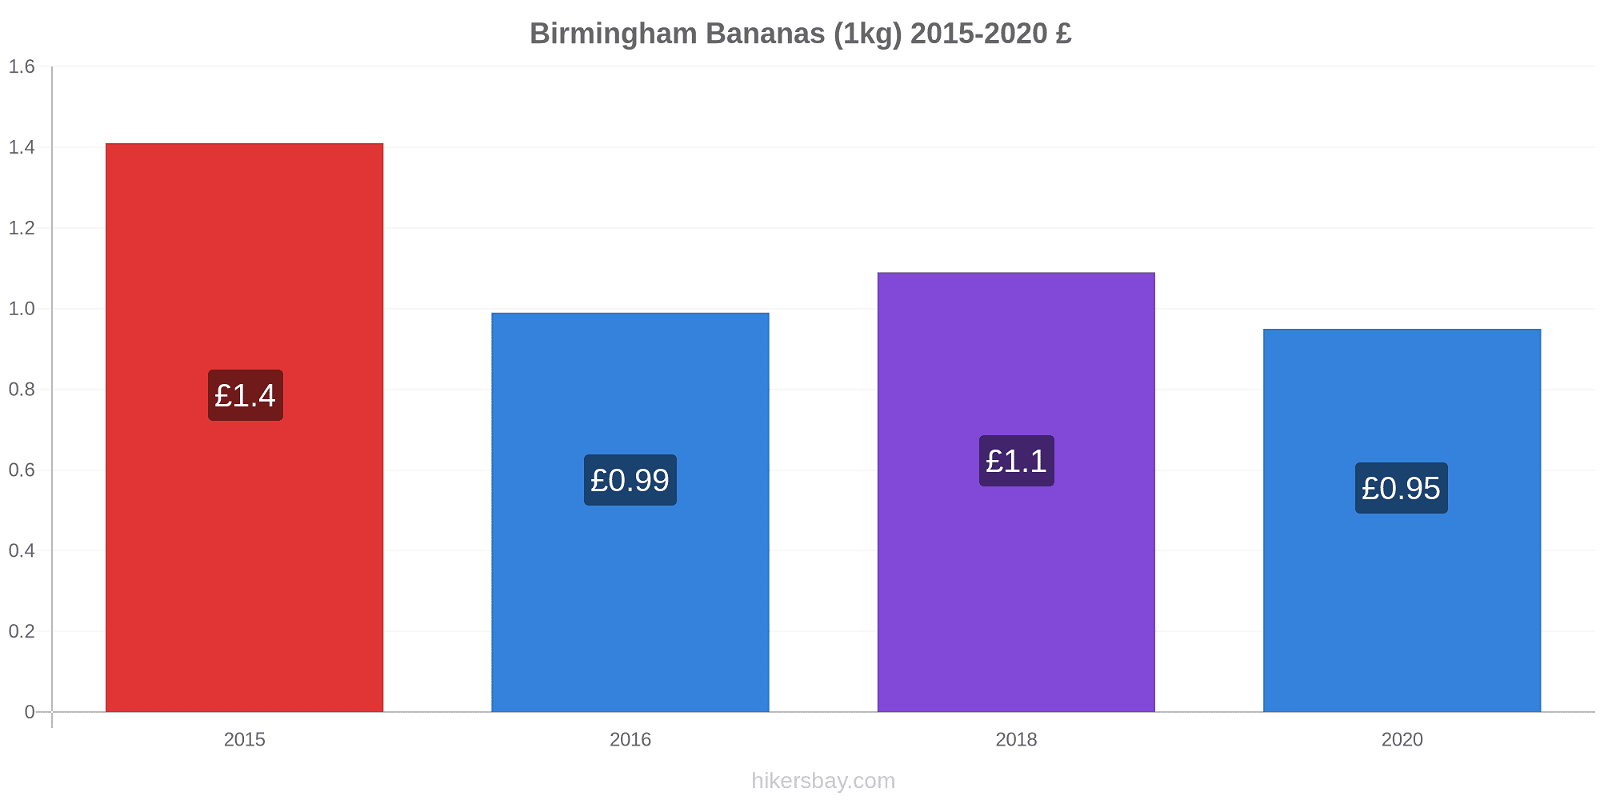 Birmingham variação de preço Banana (1kg) hikersbay.com